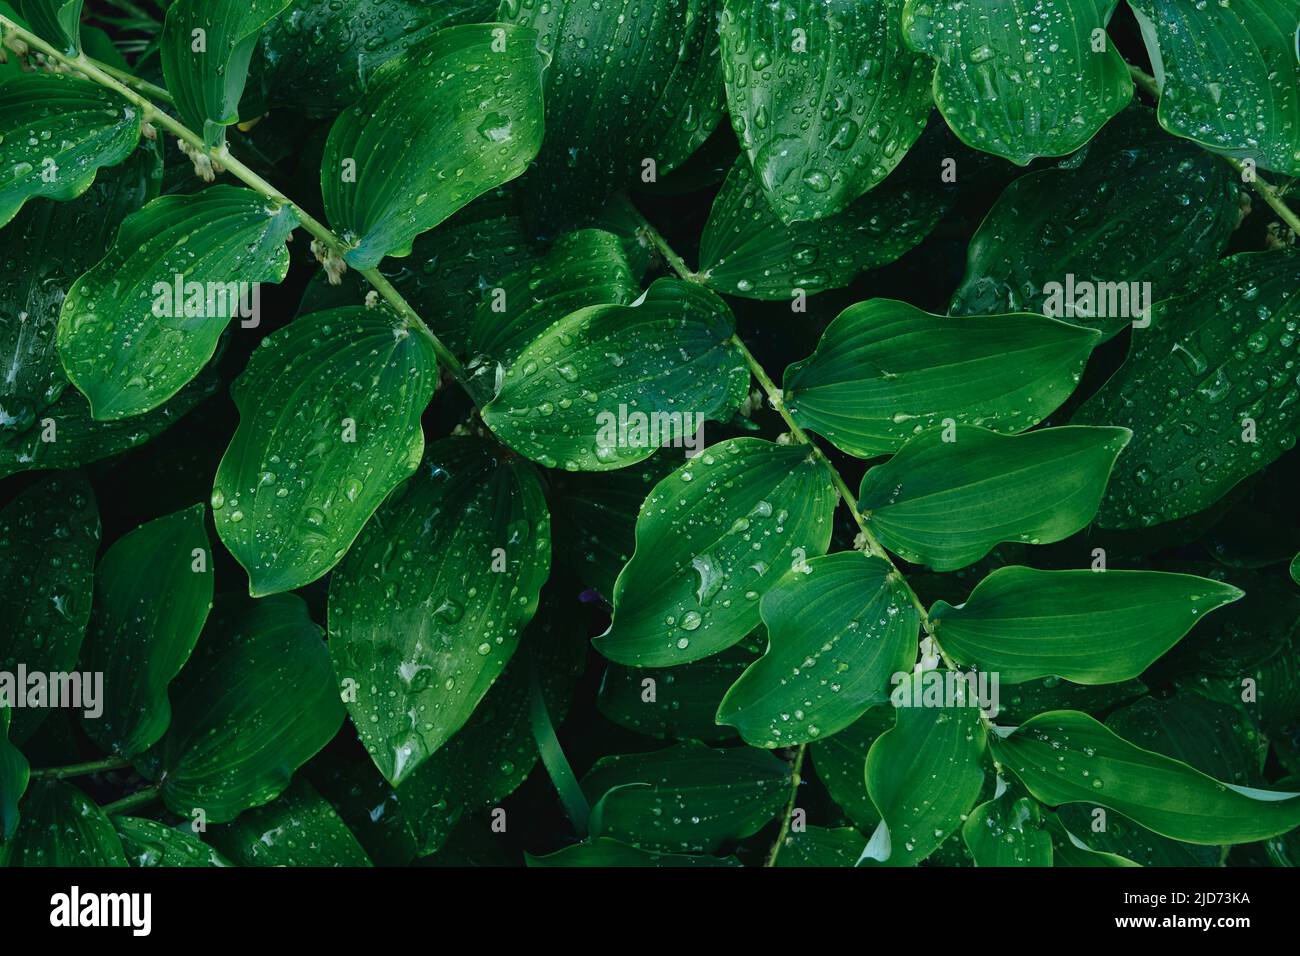 Verde hojas textura fondo. Fondo natural de follaje verde del sello de Salomón en el jardín de primavera. Polygonatum odoratum - nombre latino de la planta. Foto de stock